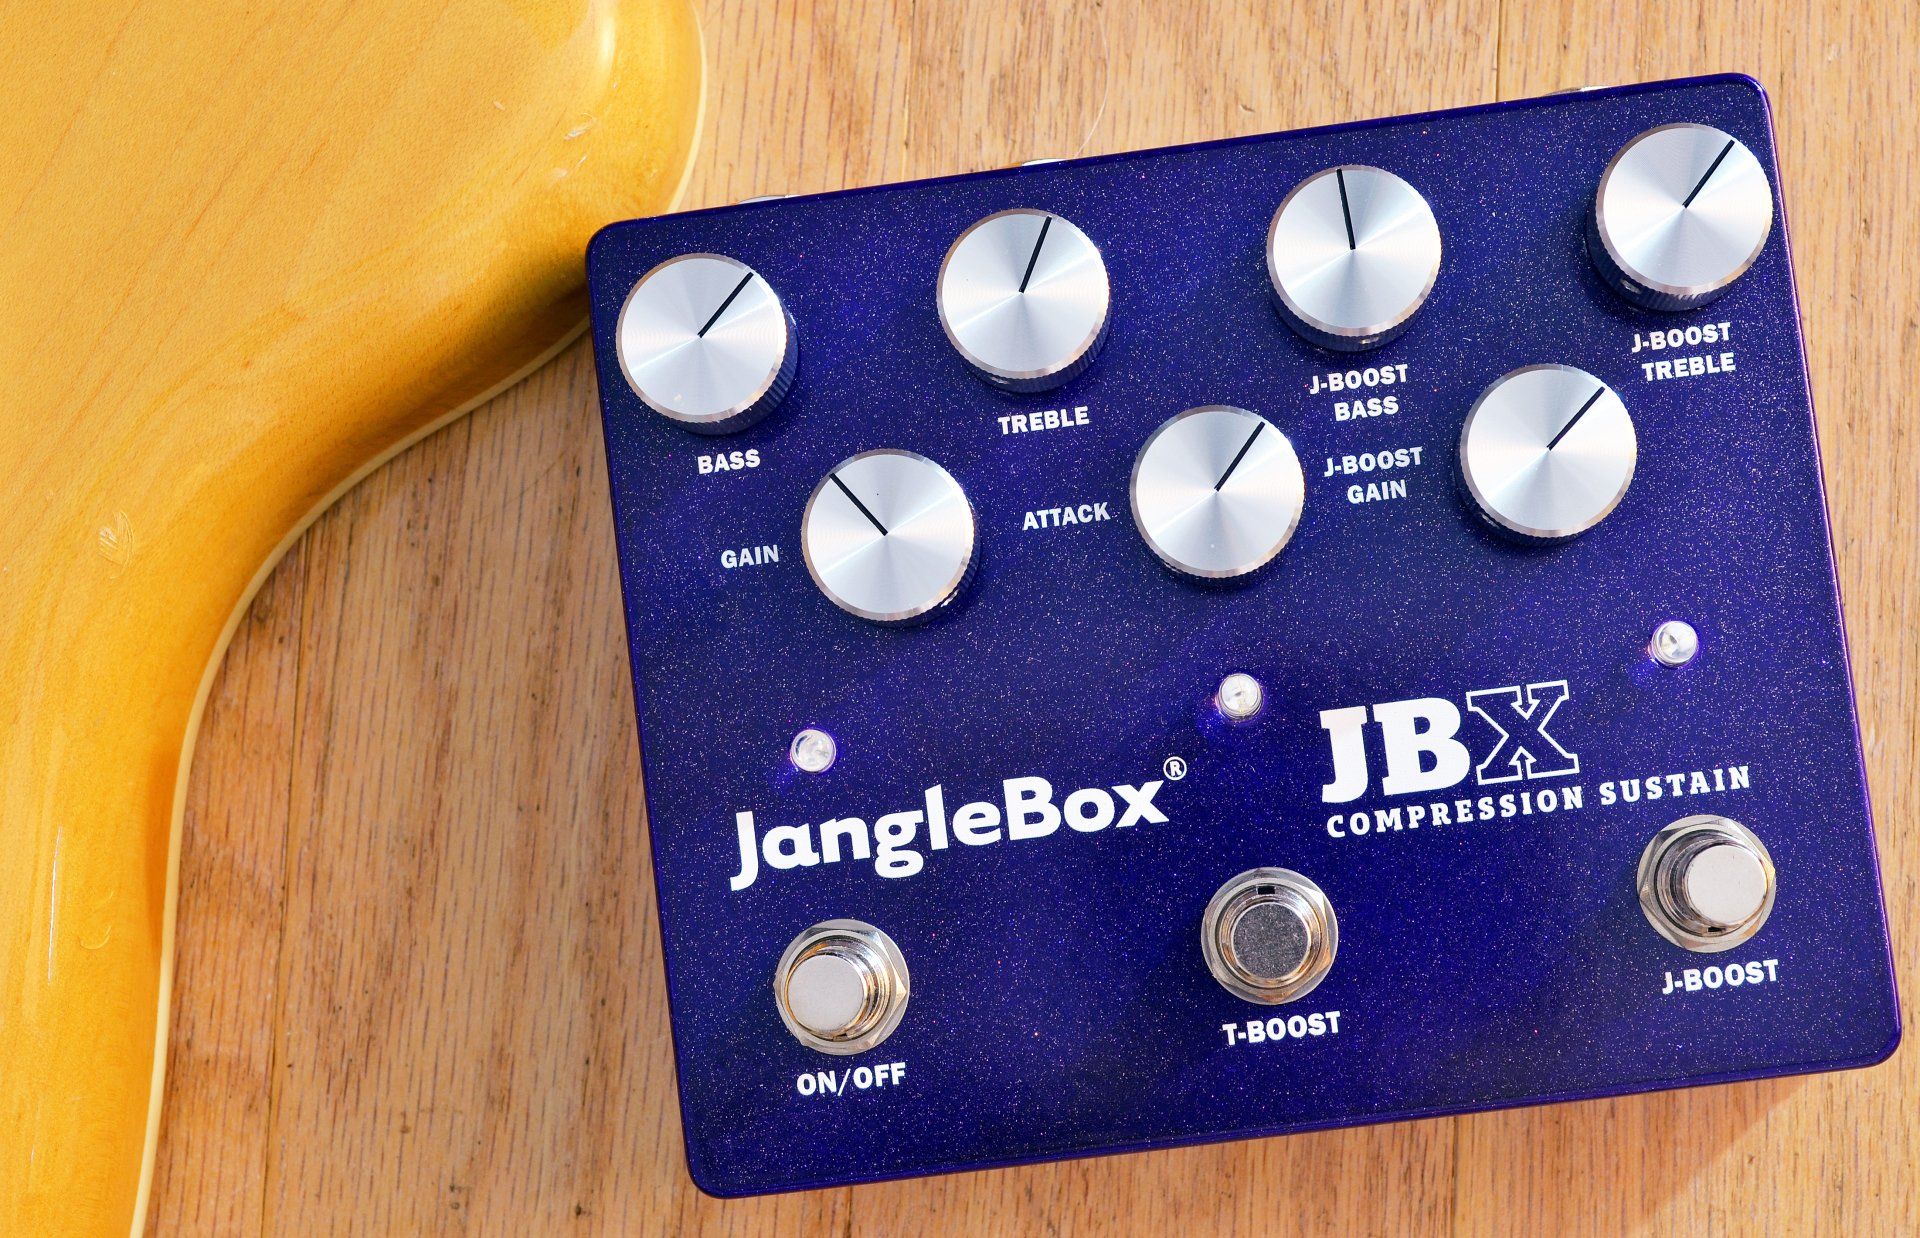 JangleBox JBX